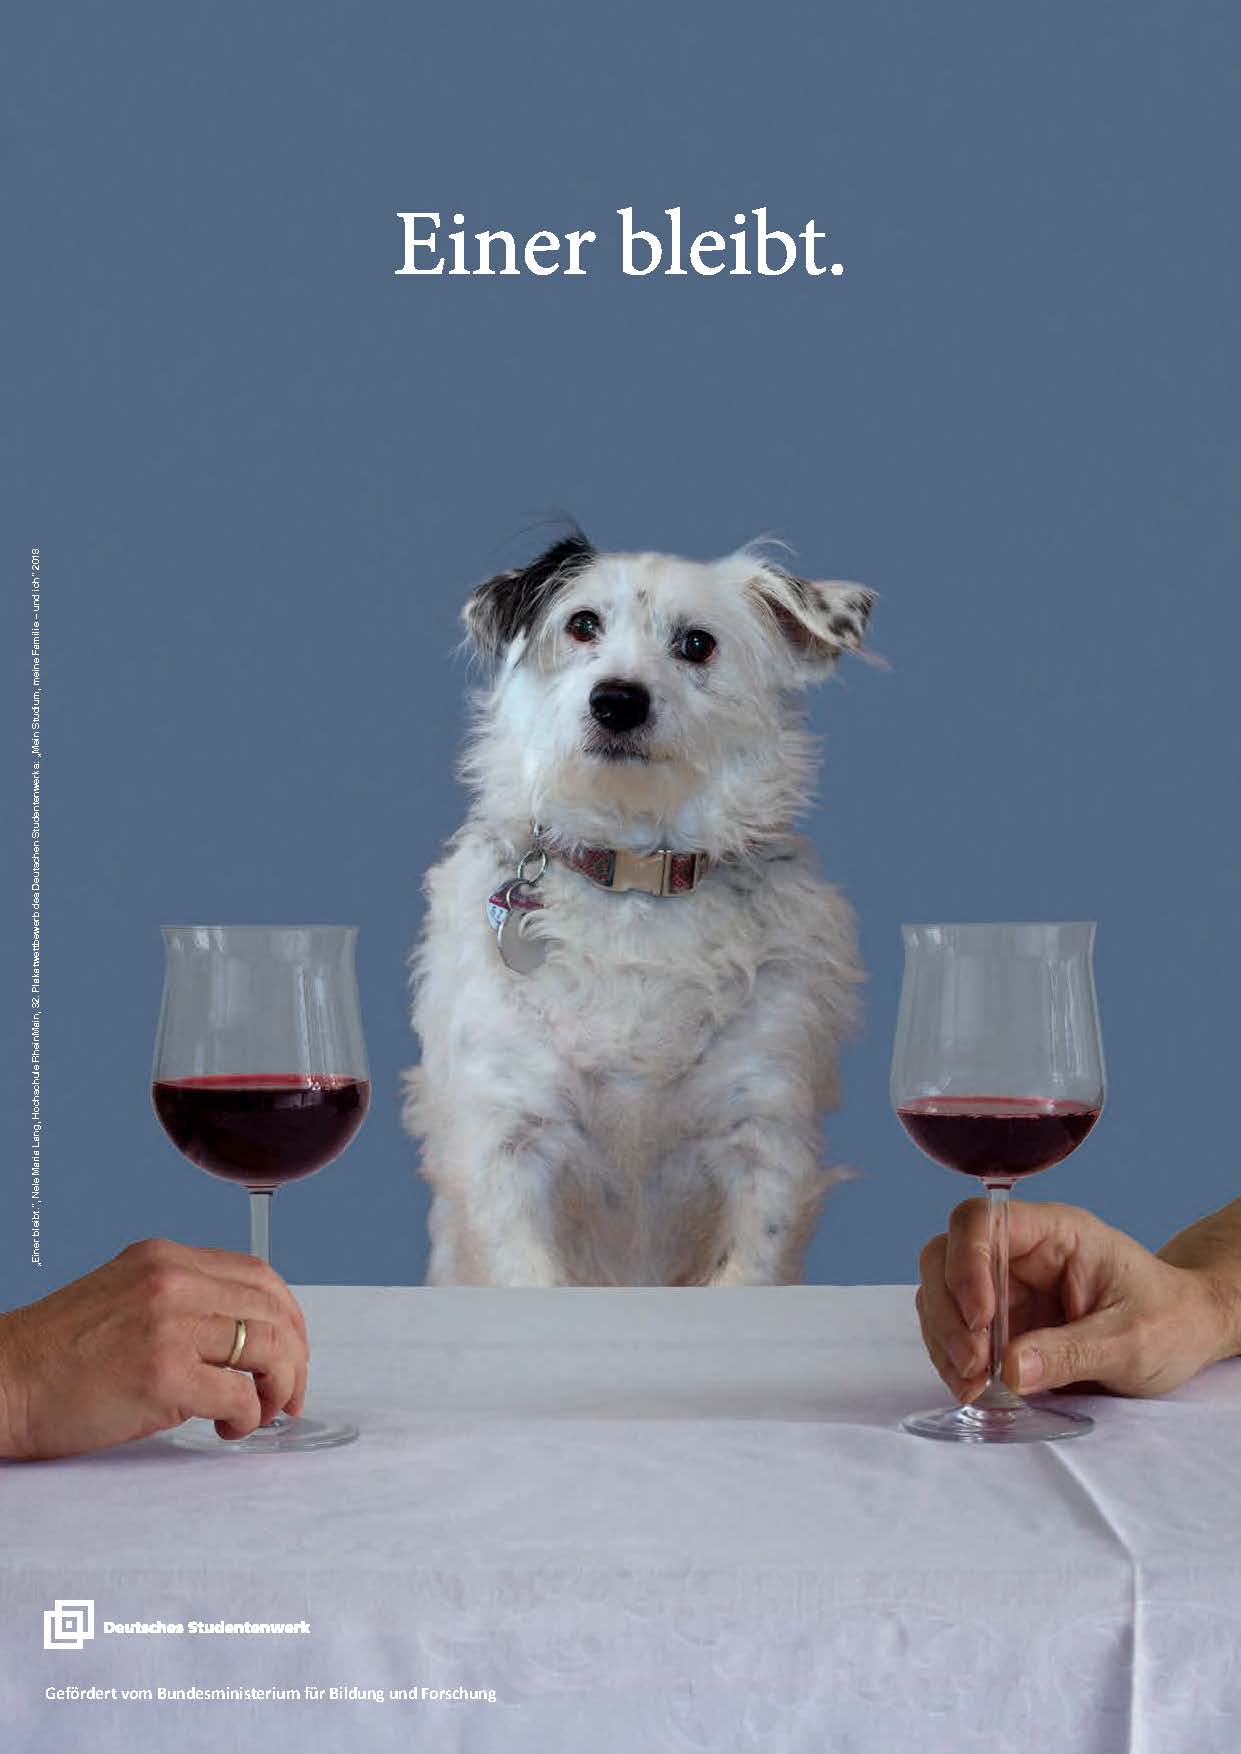 Foto - Esstisch, in der Mitte sitzt ein Hund am Tisch, rechts und links ist je eine Hand mit einem Weinglas zu sehen